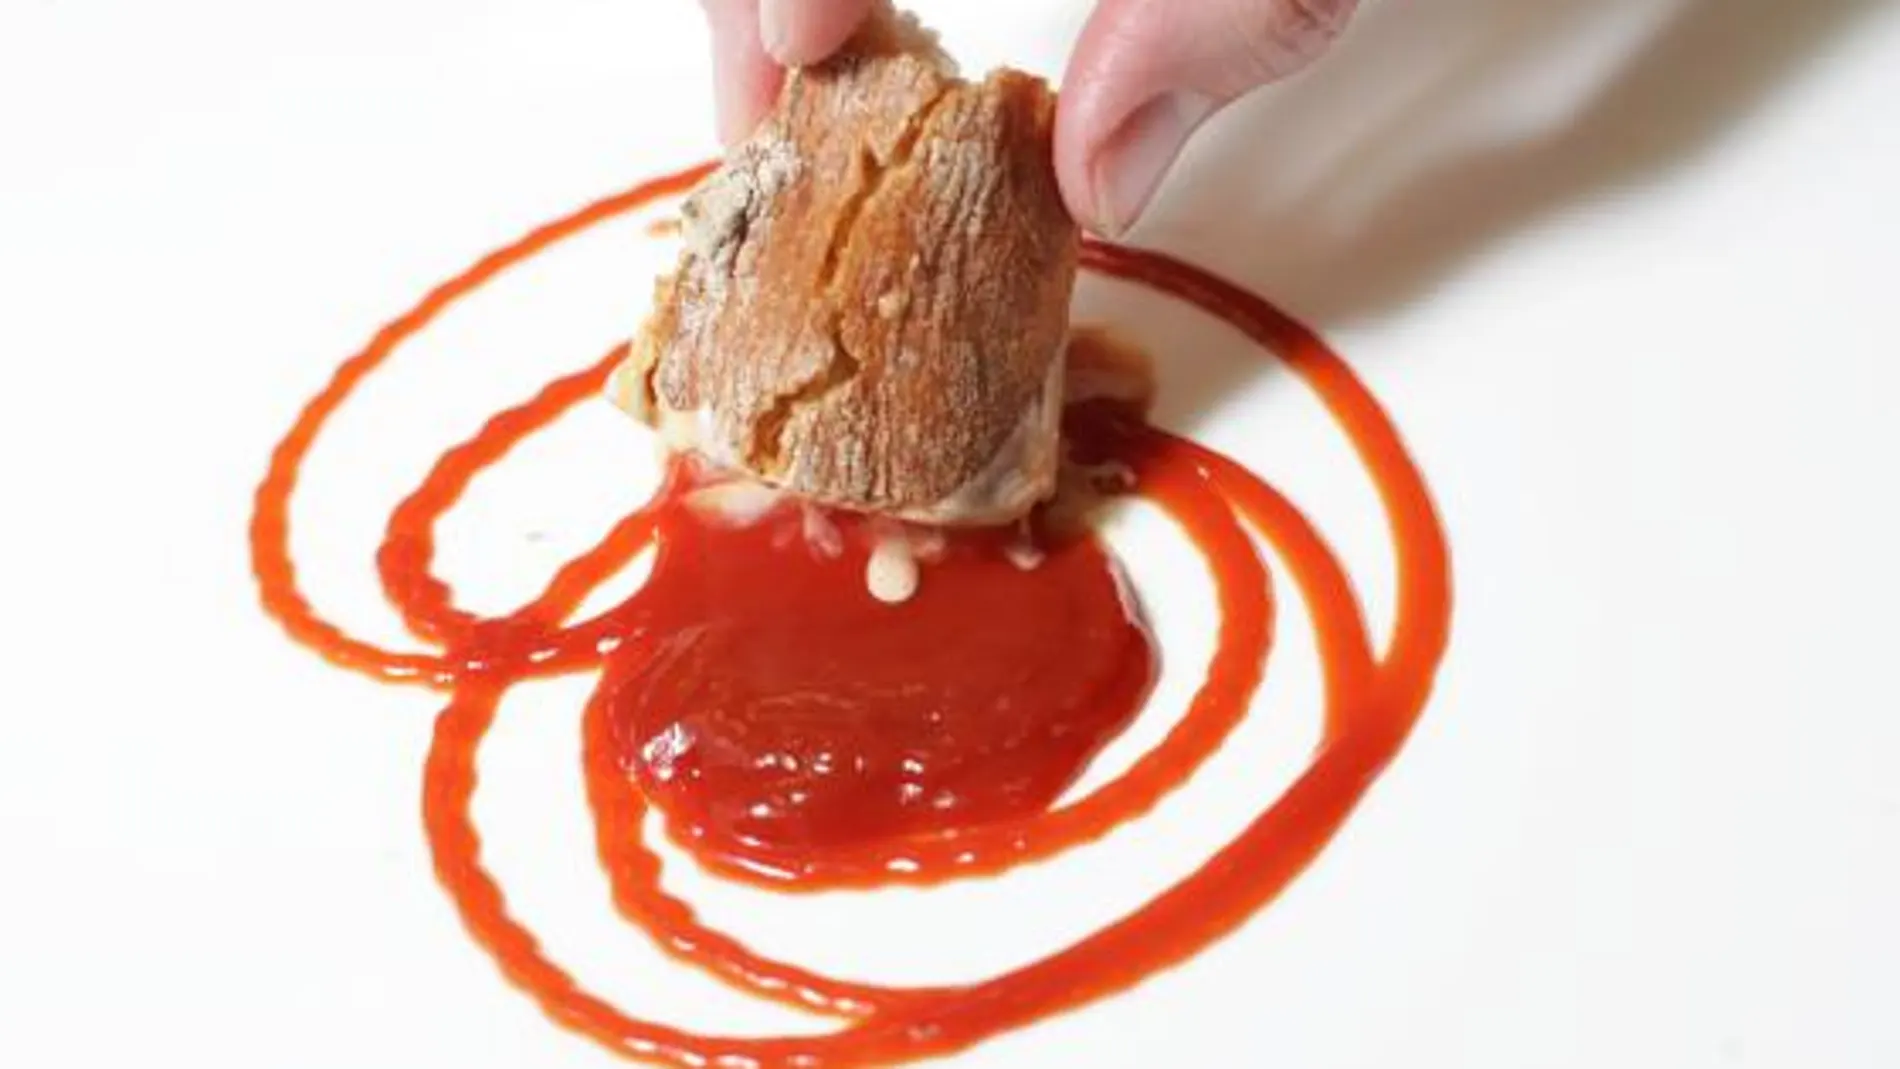 El problema afecta al lote E087, con fecha de caducidad del 27 de marzo de 2022, del ketchup con azúcar de caña de la marca Danival.